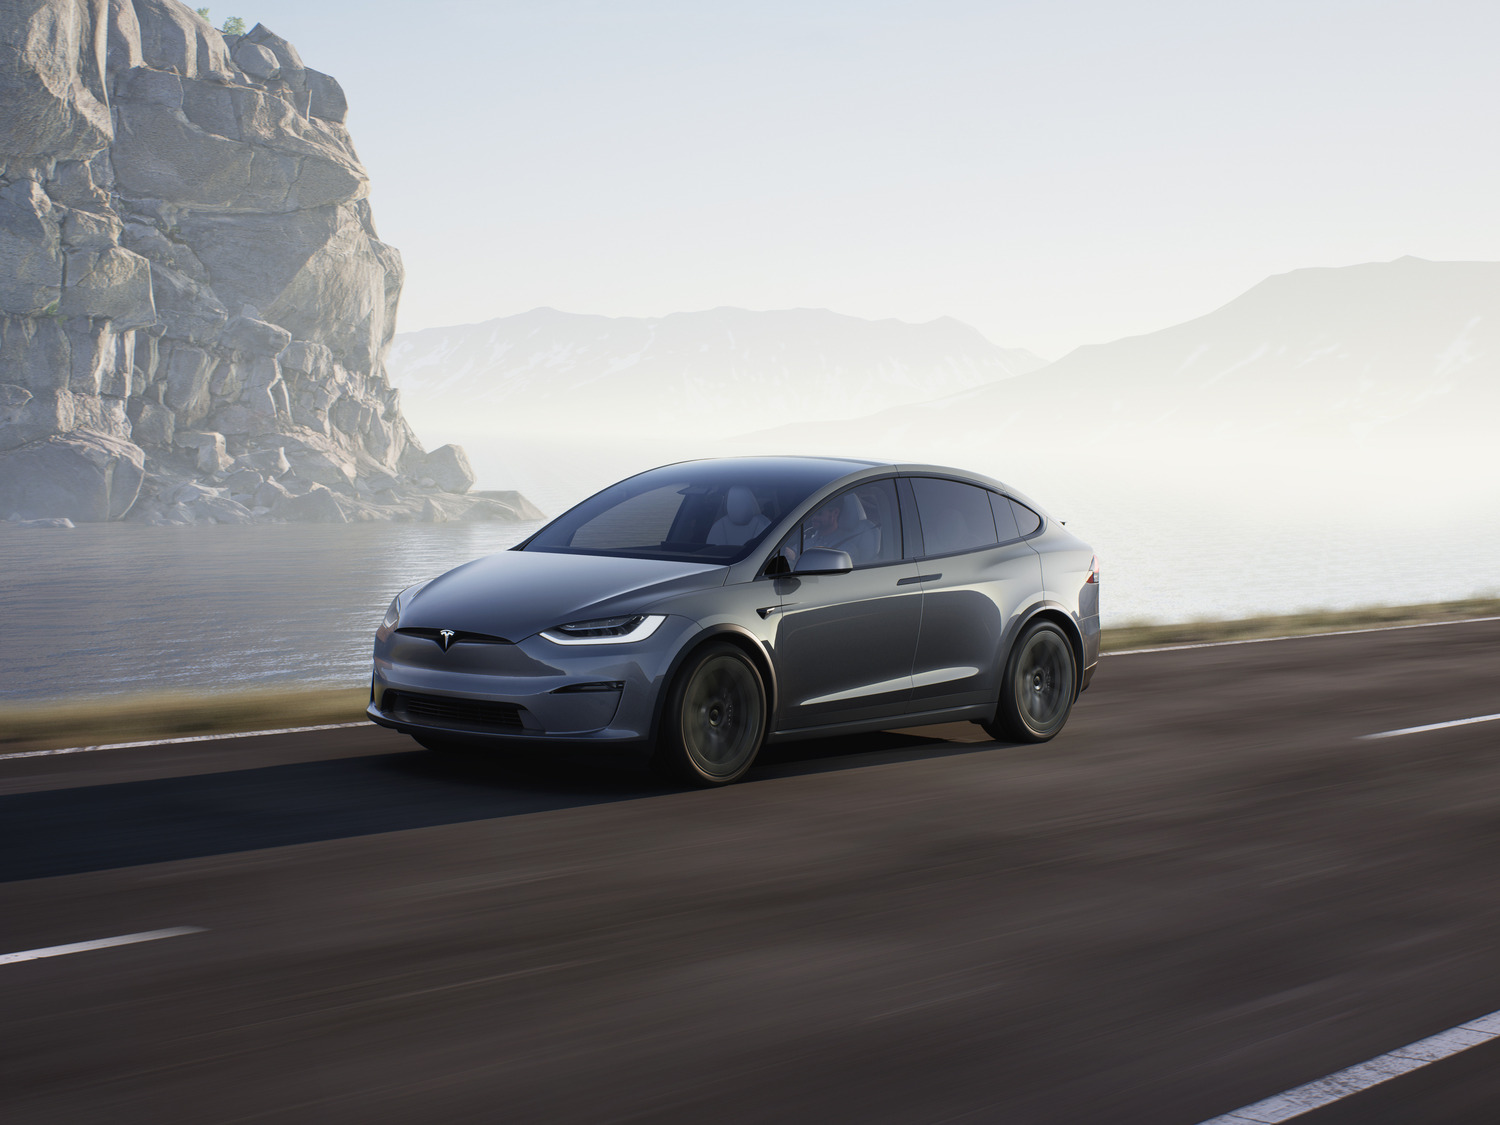 Tesla Model X Plaid luxury EV in mist